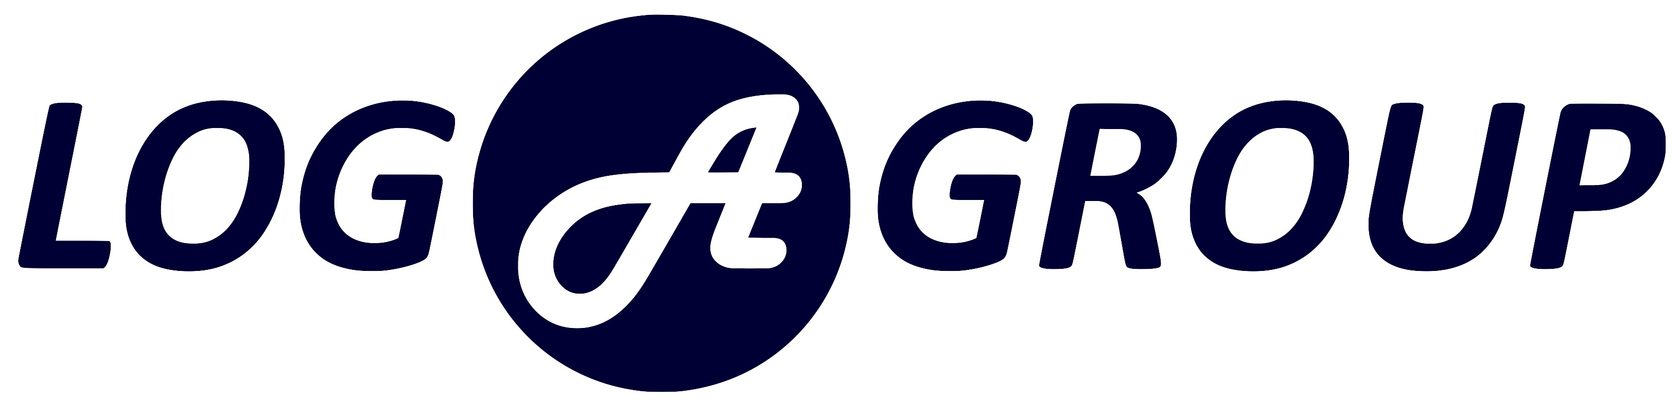 Logas логотип. For Group лого. Лого Fertilog Group. Логотип log 01. Level group логотип